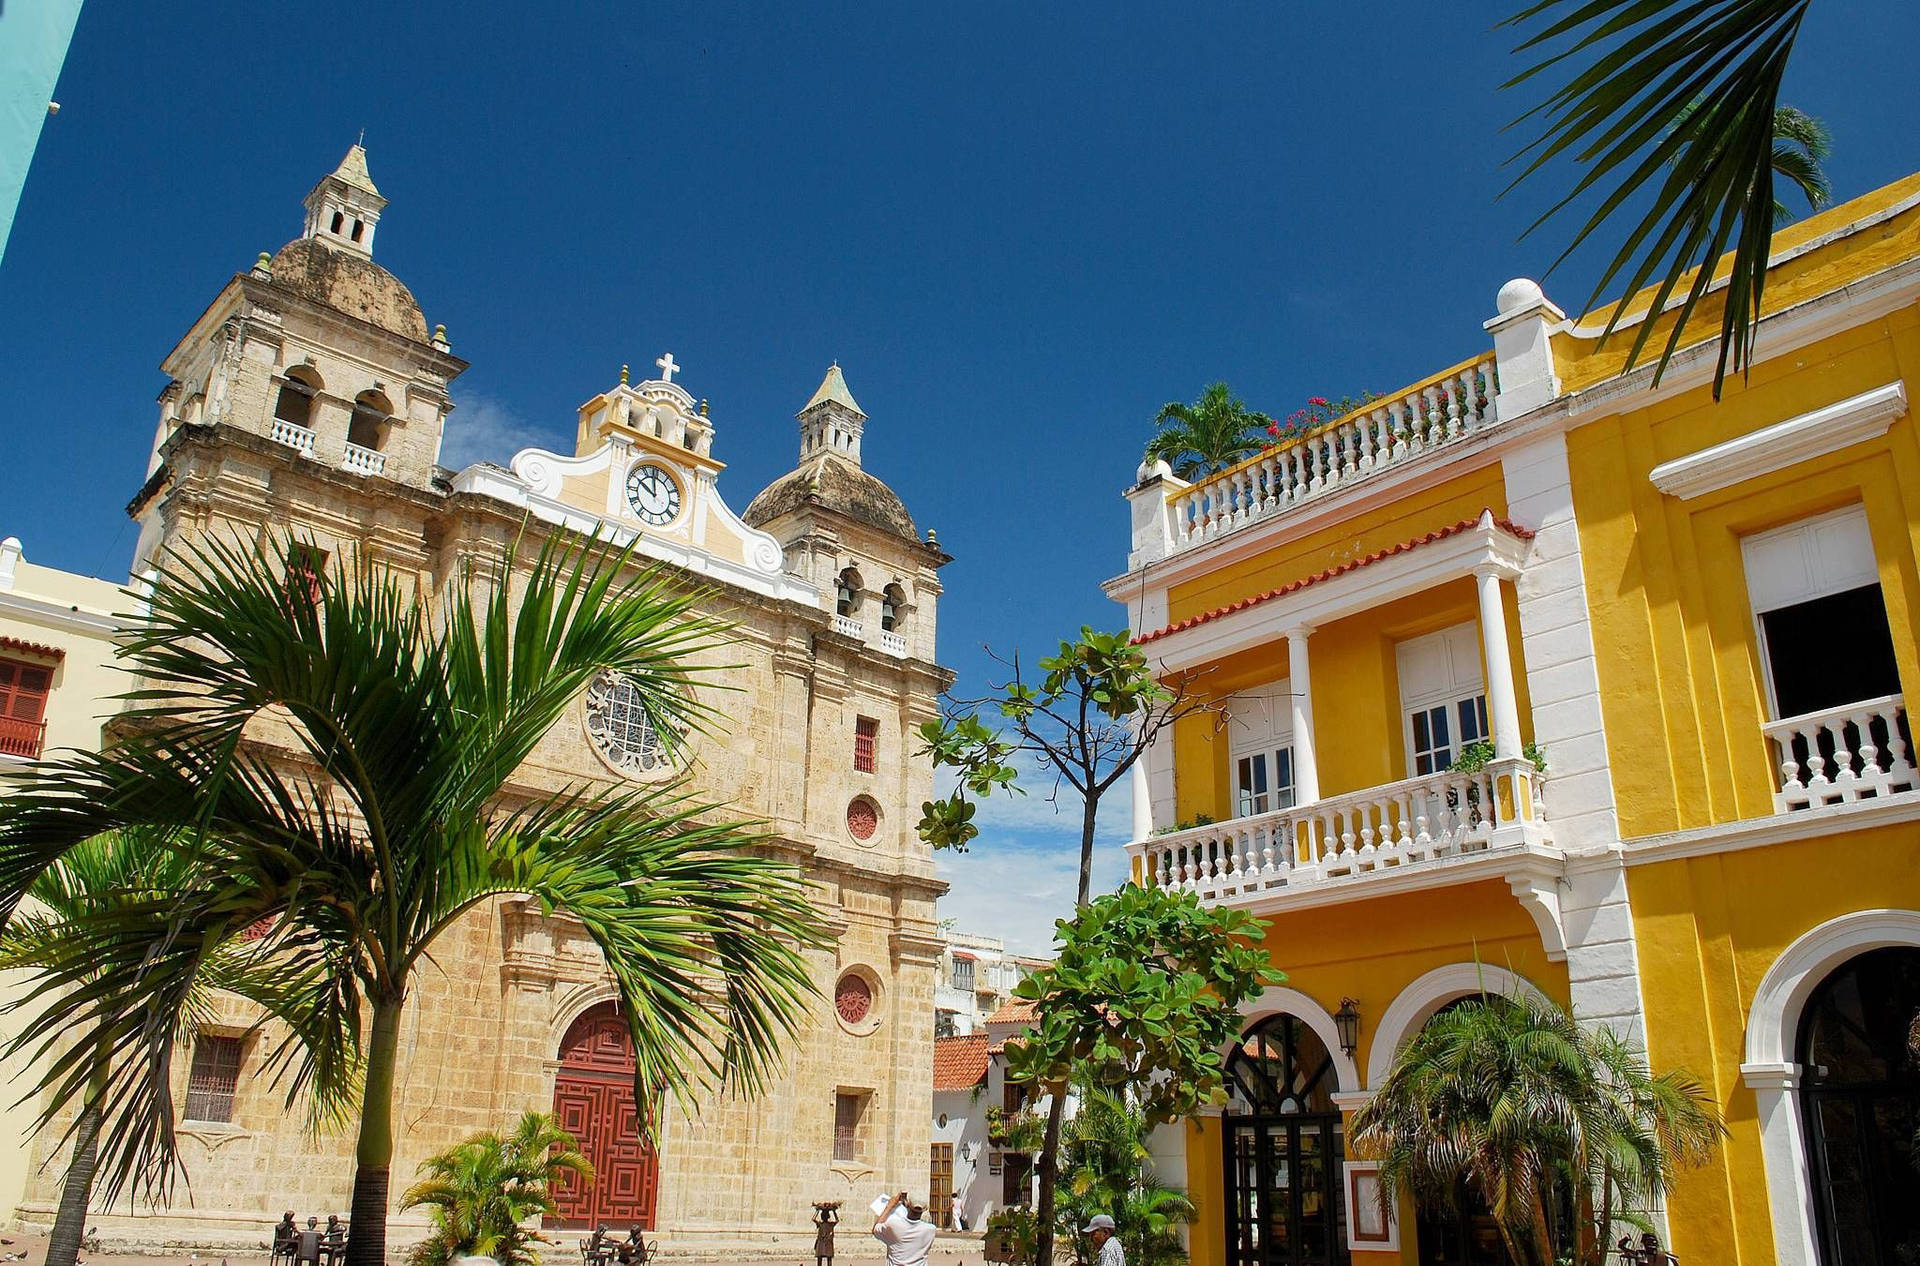 L'iconicosantuario De San Pedro Claver, Il Cuore Del Quartiere Storico Di Cartagena. Sfondo